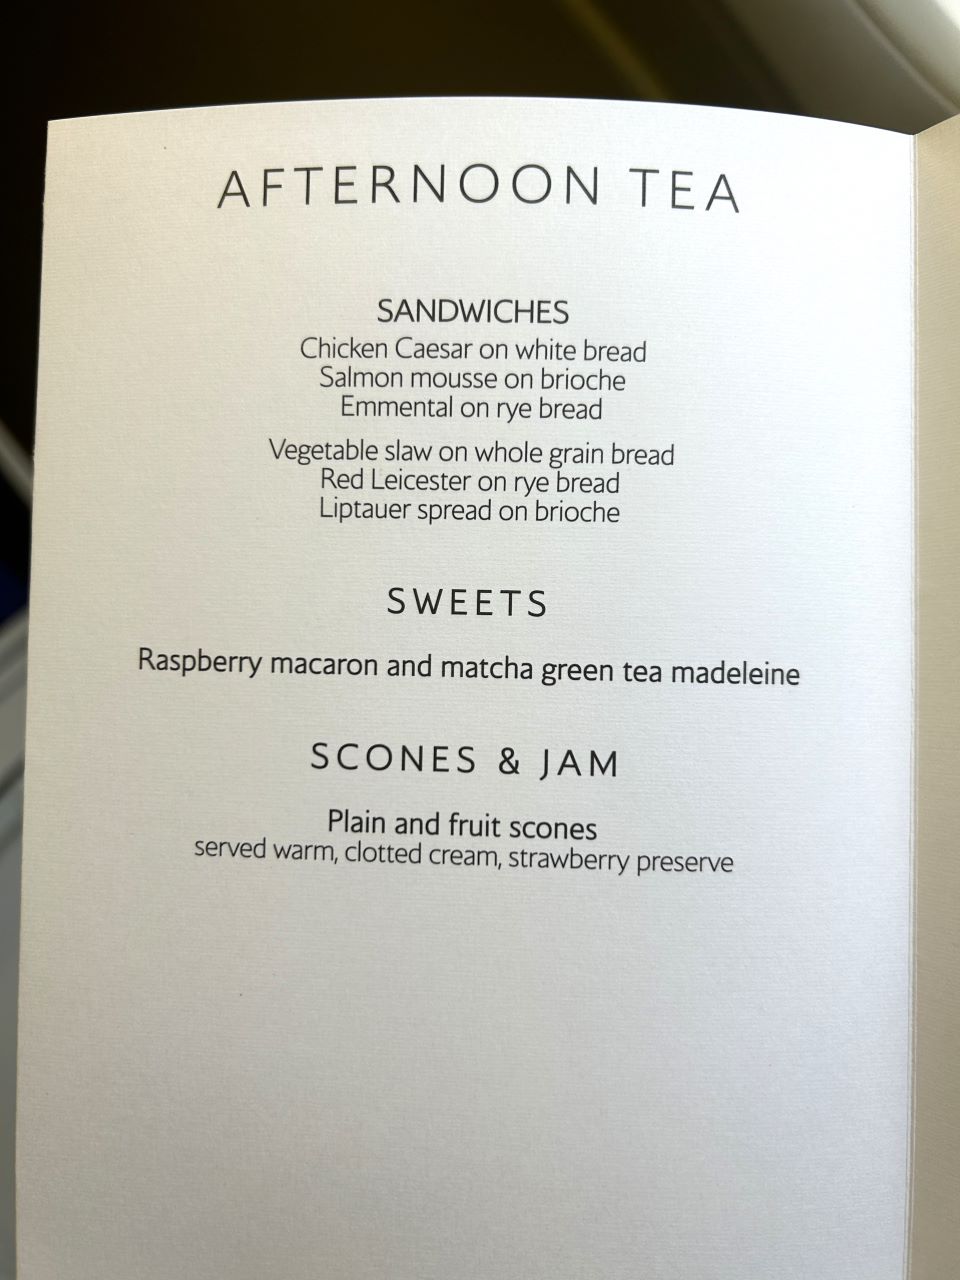 British Airways Old Club World Afternoon Tea